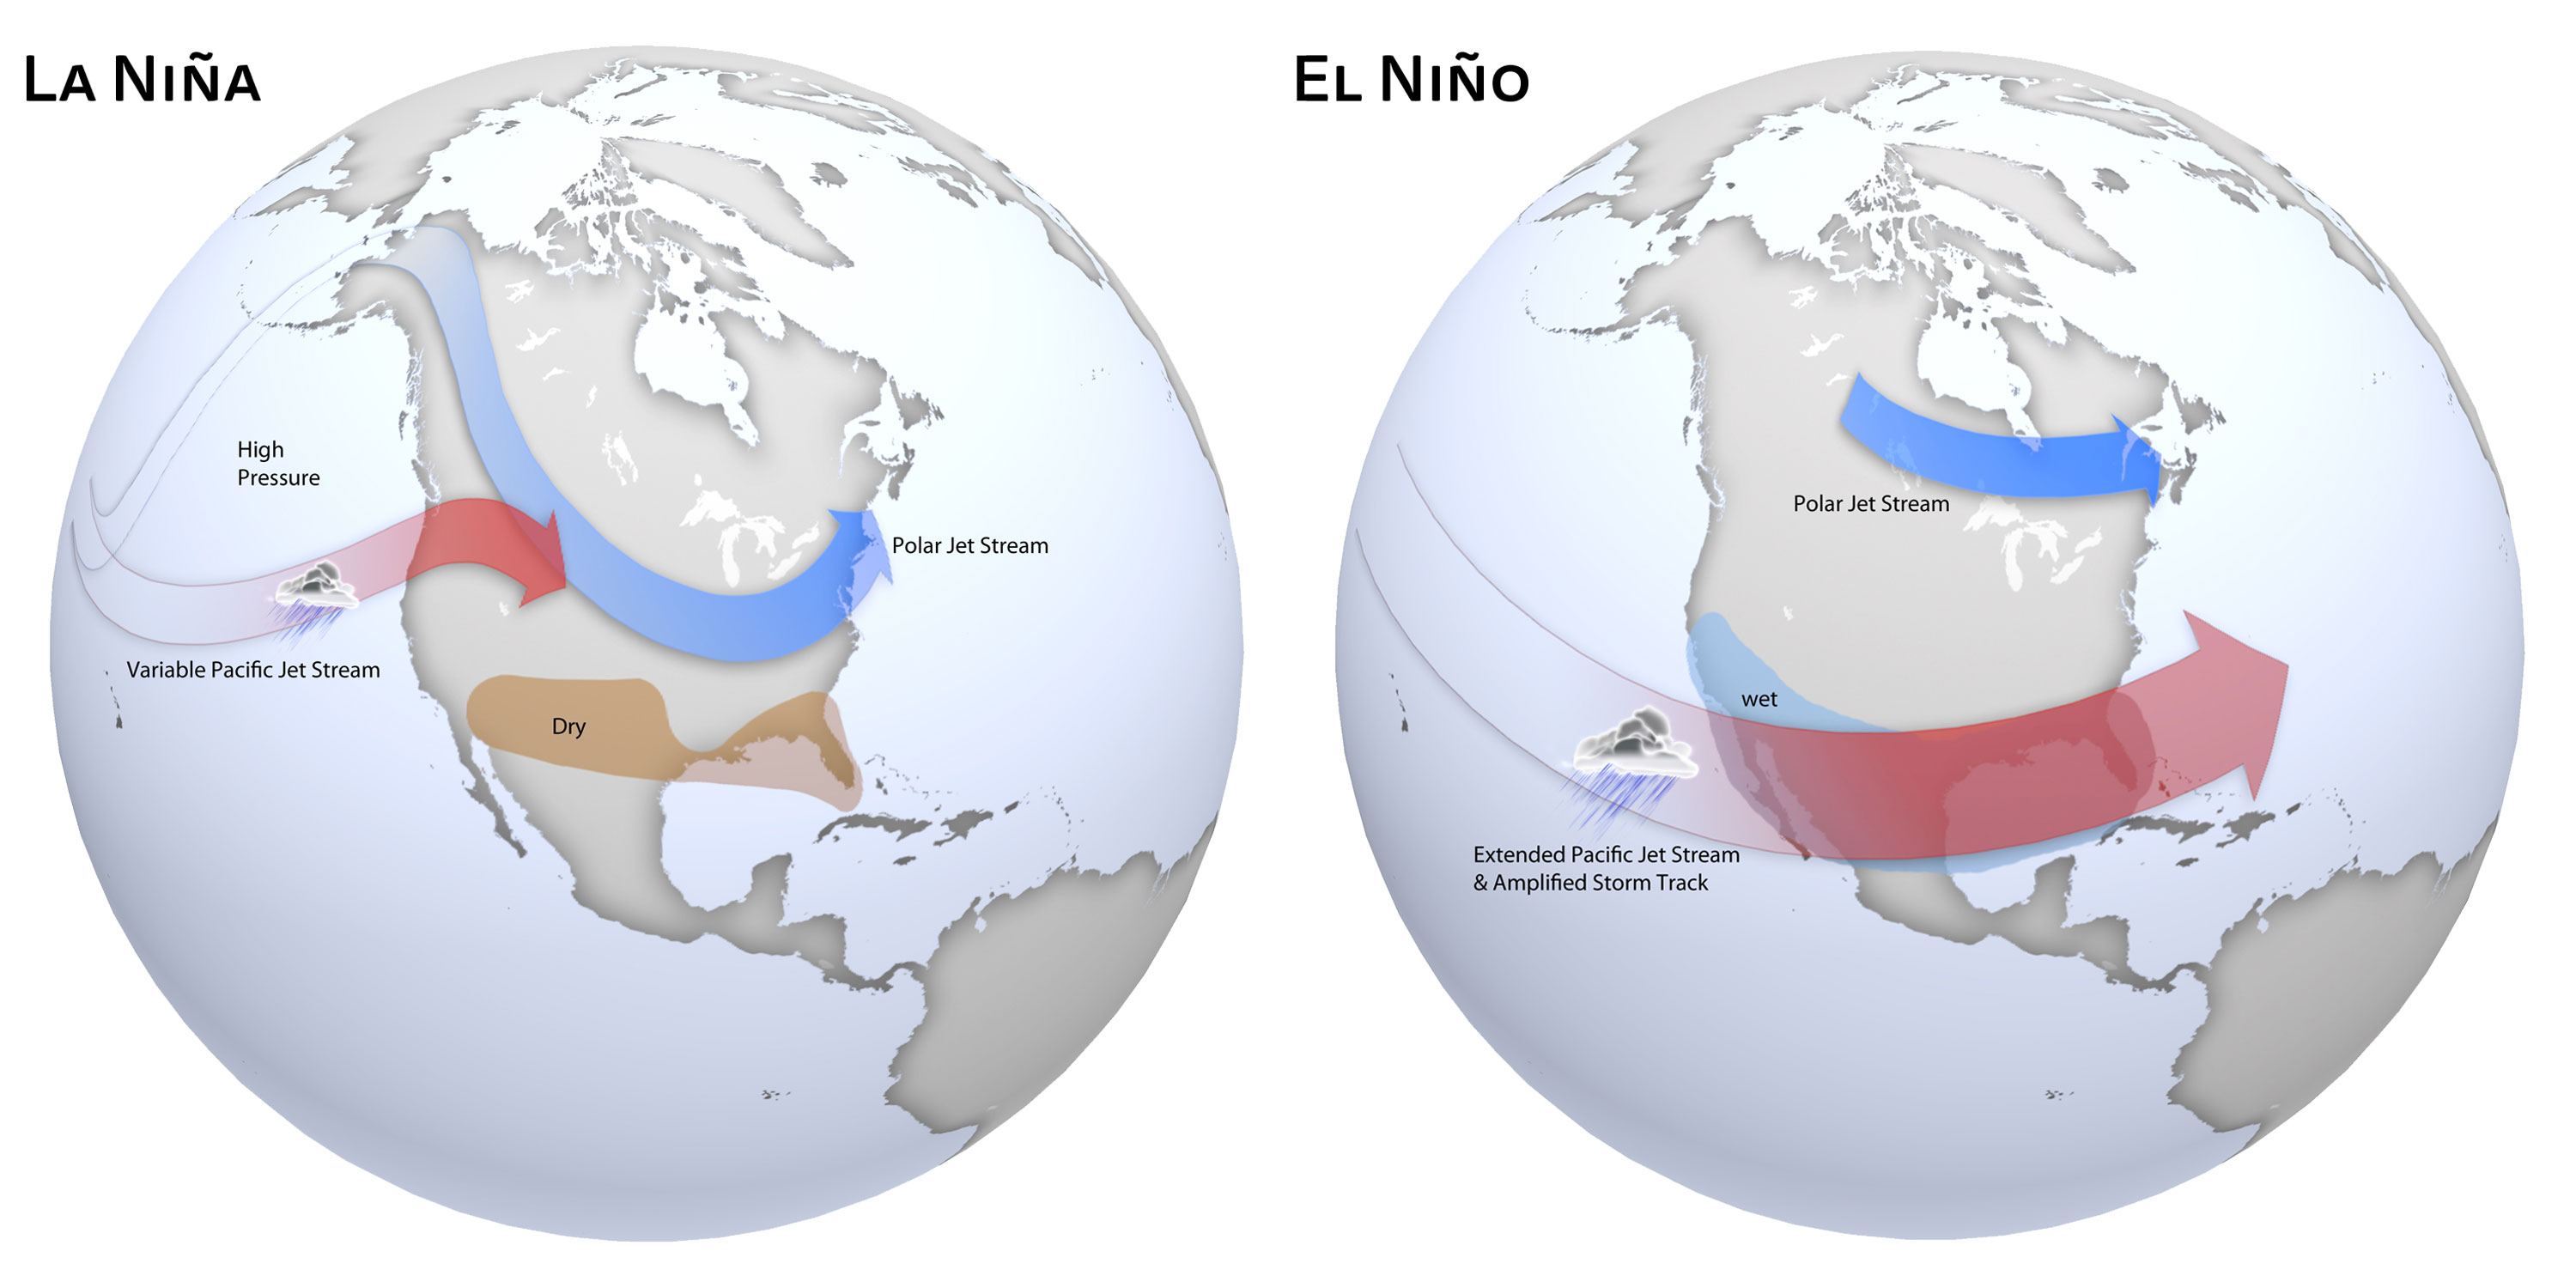 La Niña and El Niño